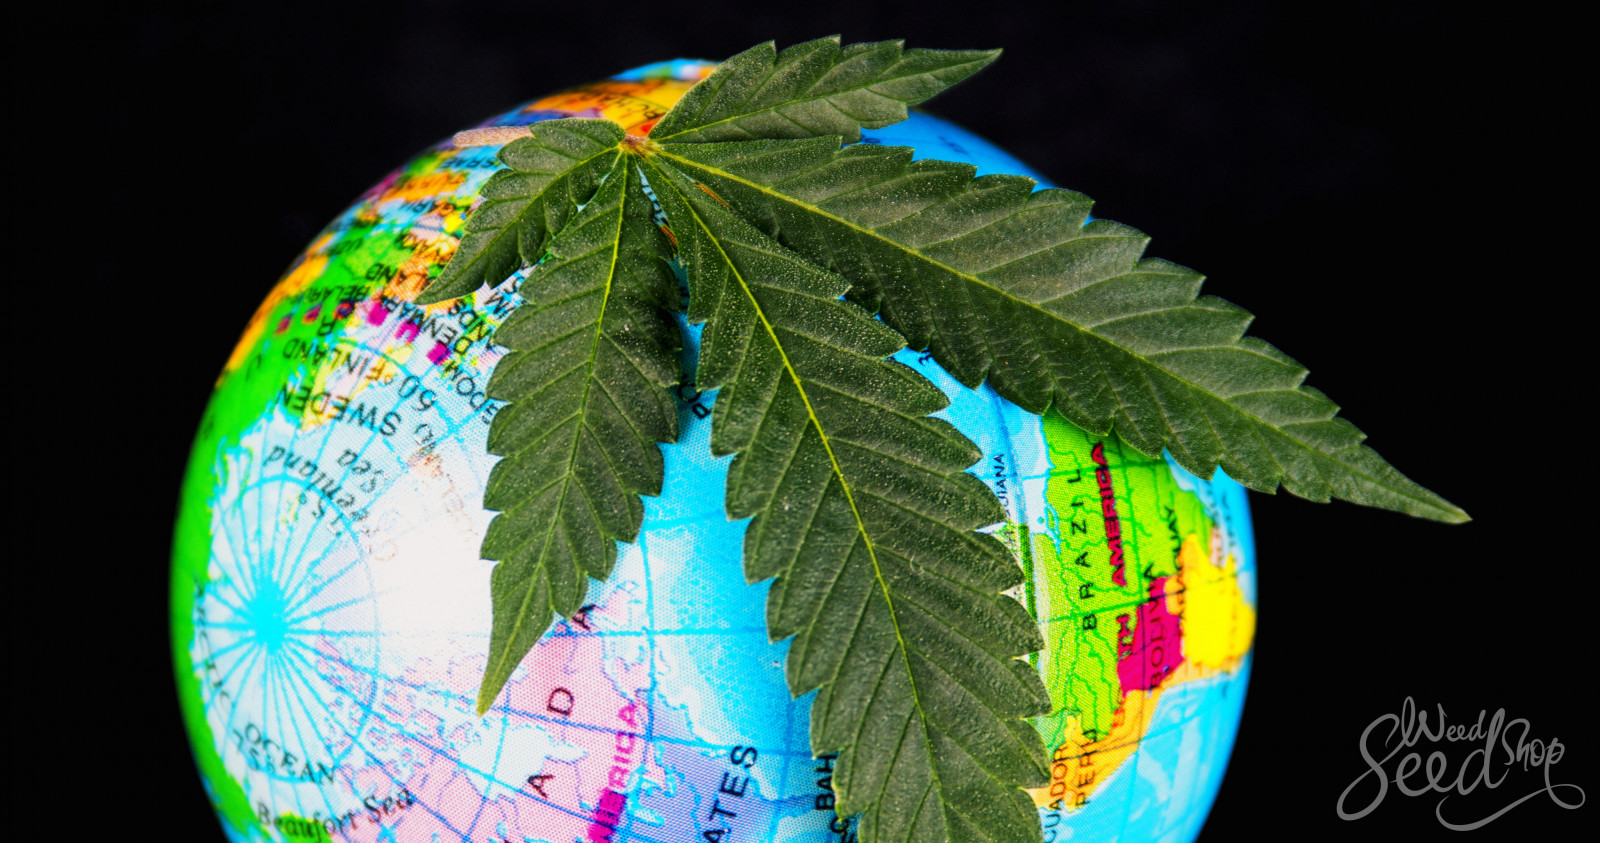 globus s konopným listem, znázorňující celosvětový vývoj v legalizaci konopí